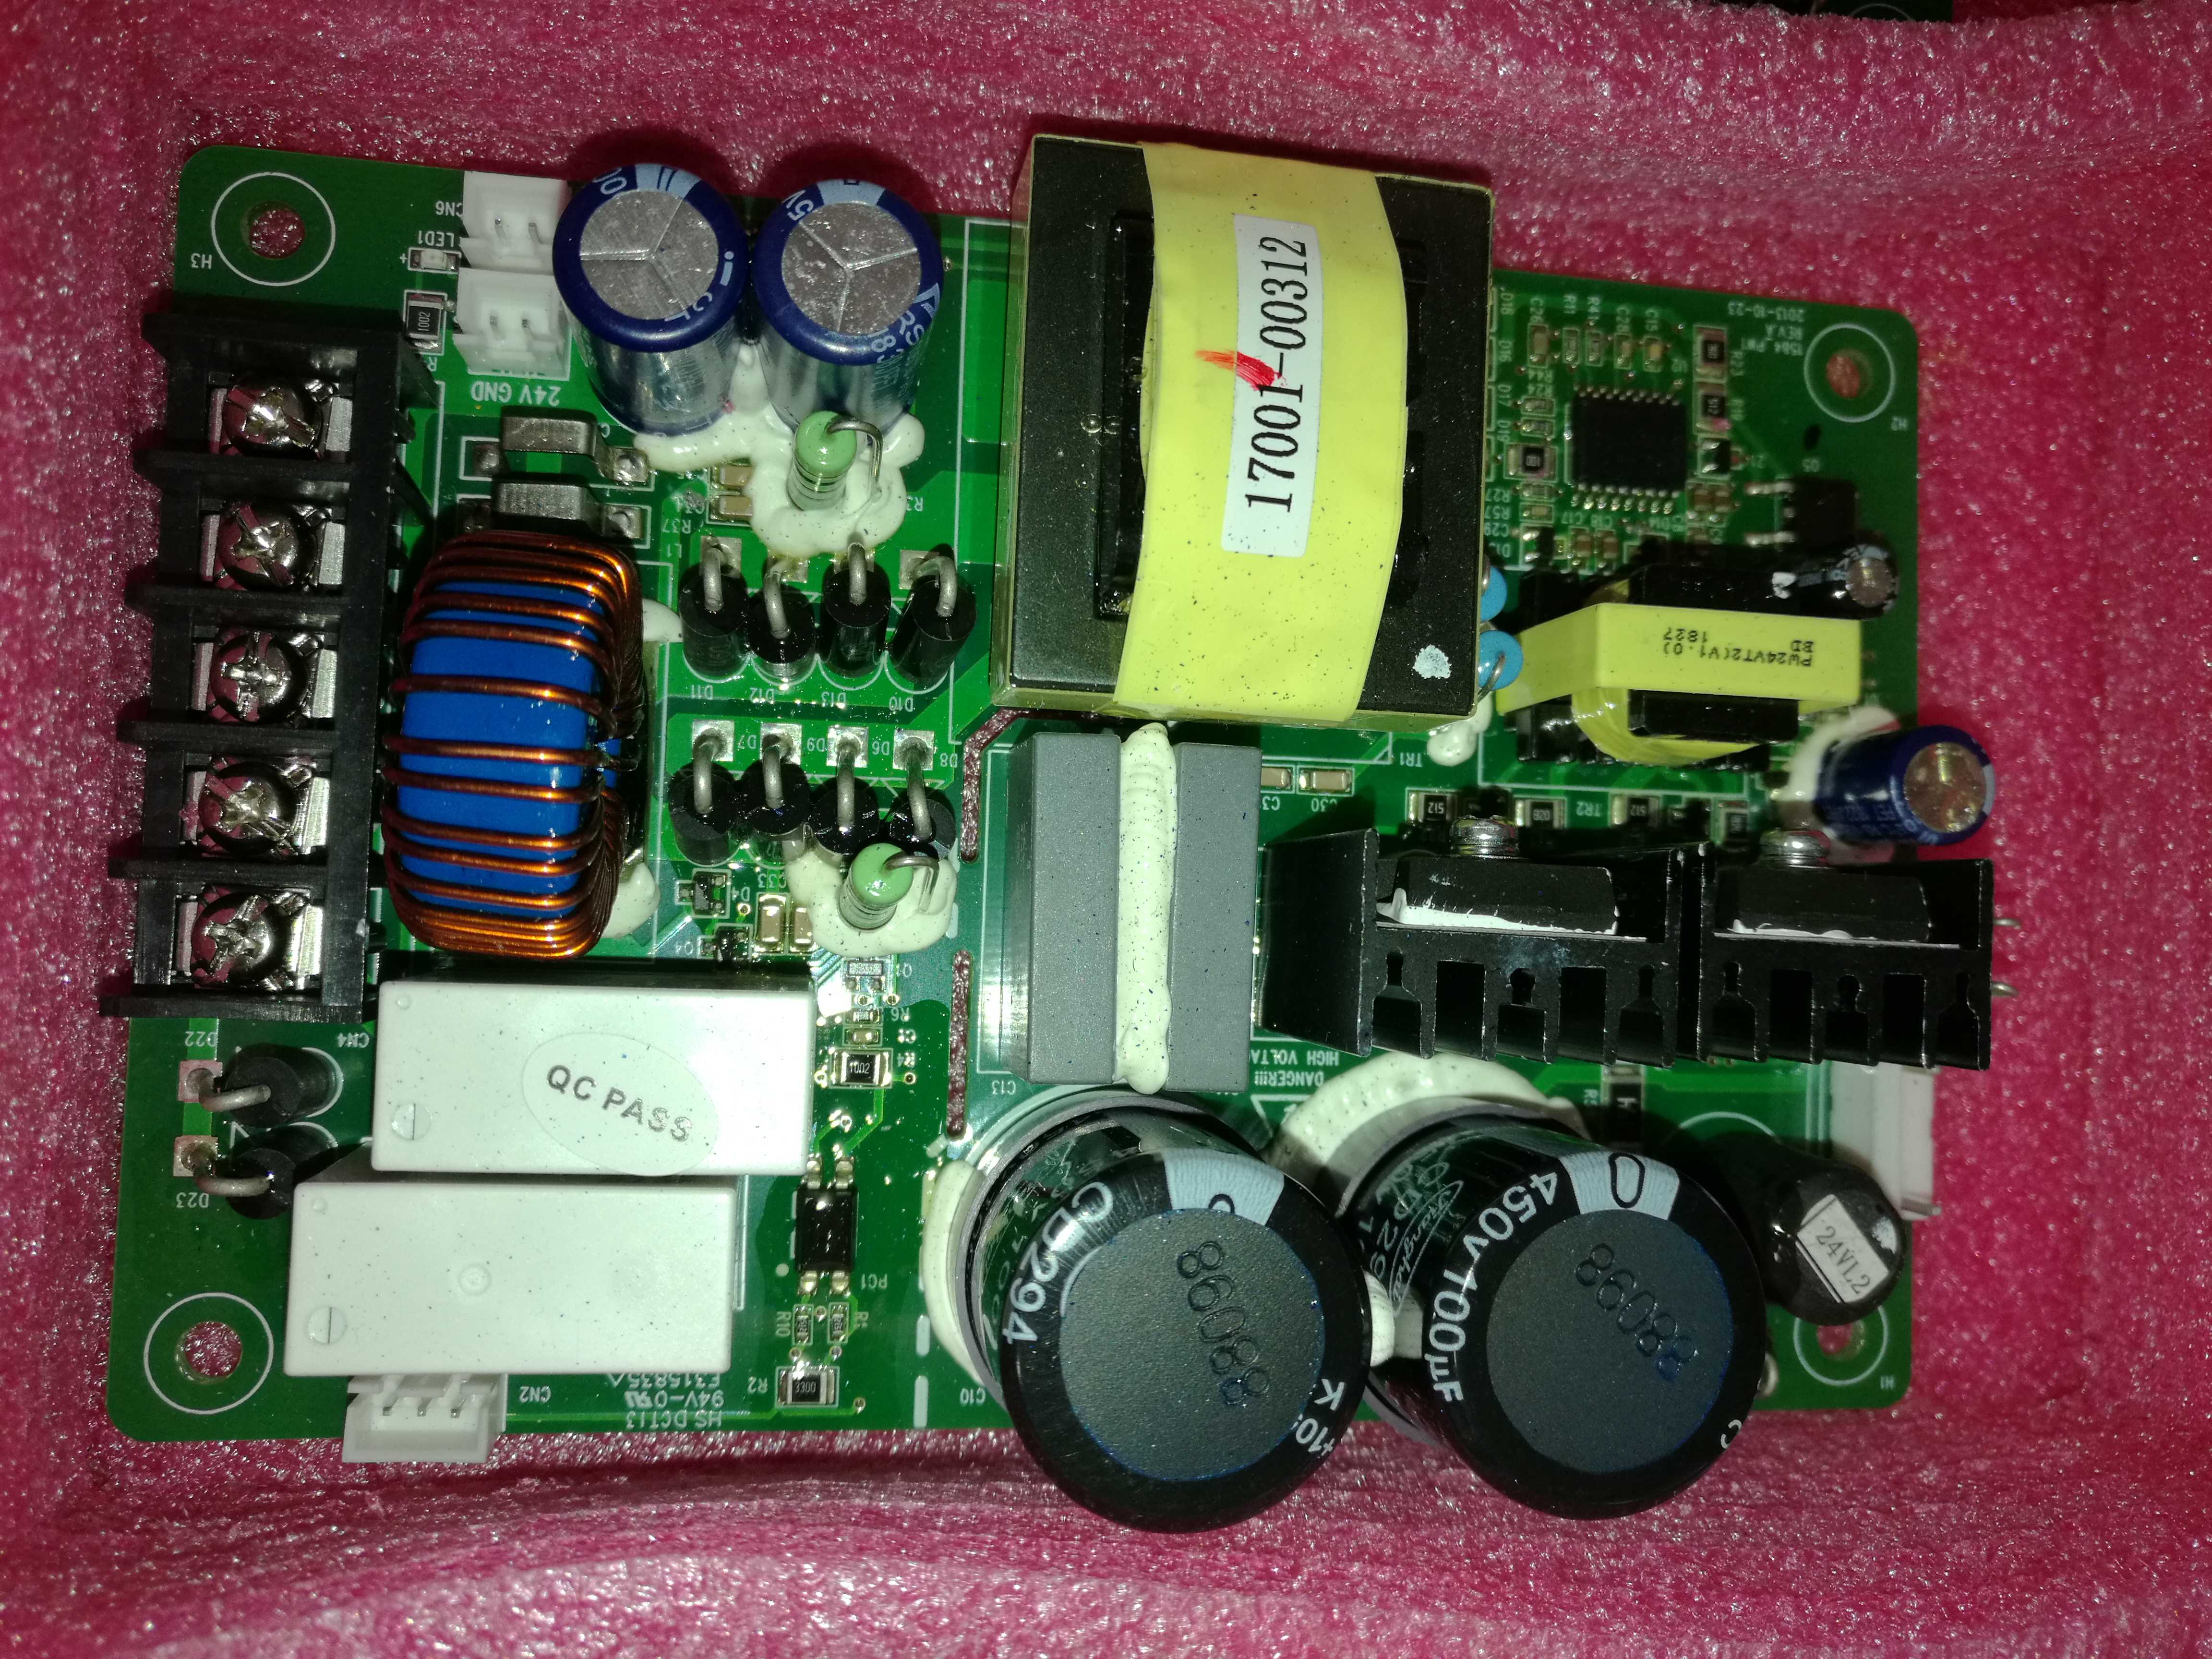 HS DCT13 94V-0 E315835 power board 17002-00169 INVT inverter dedicated 24V board